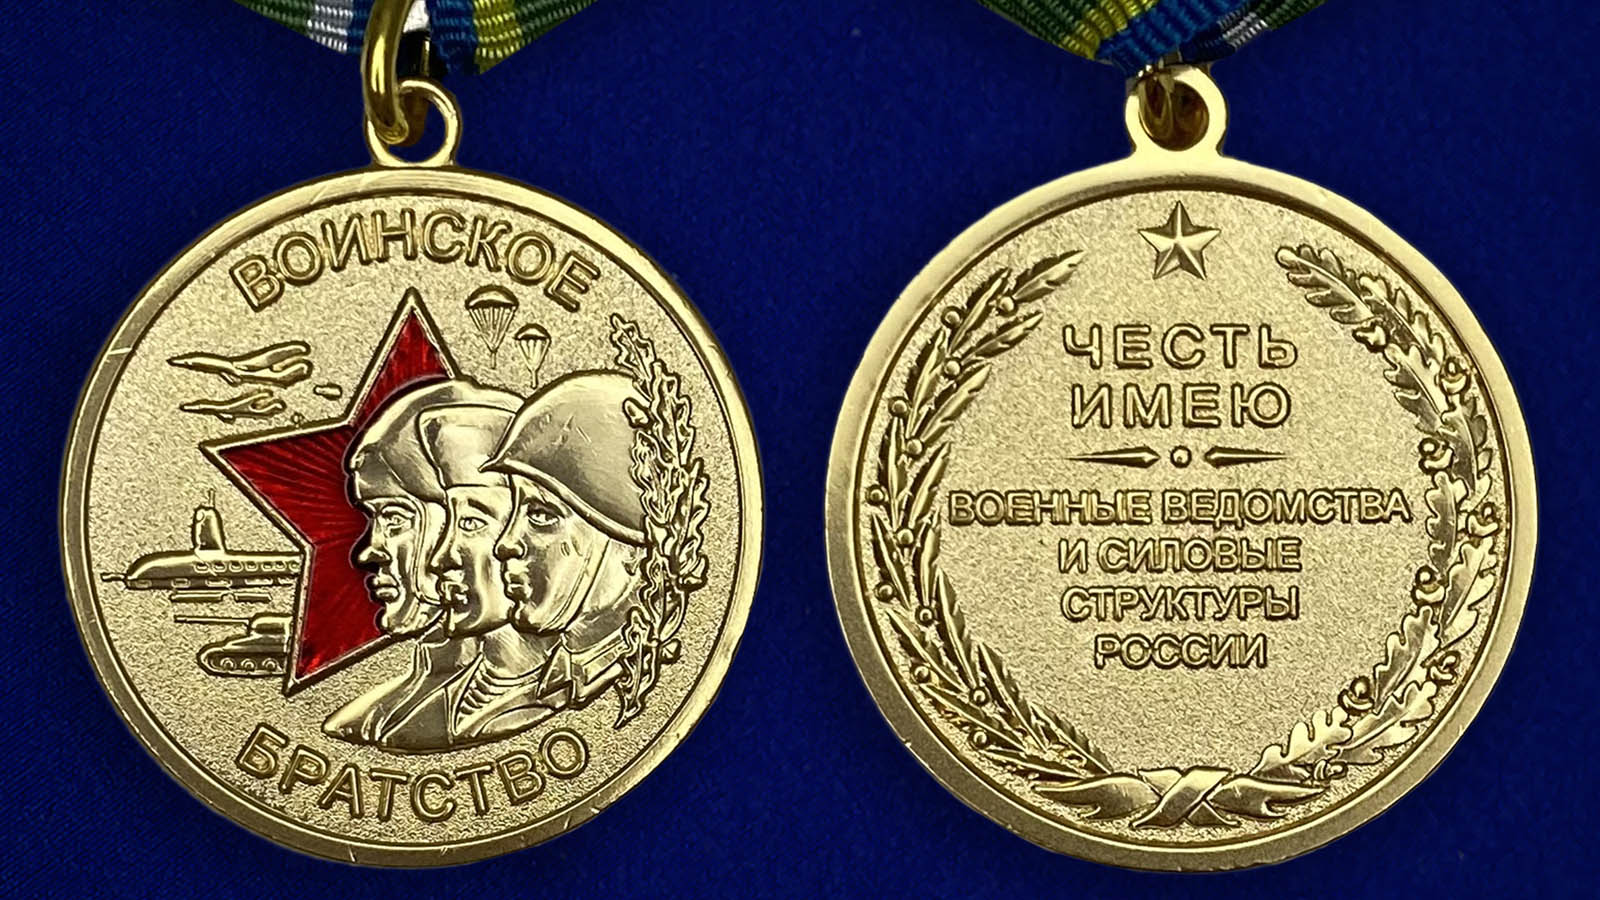 Где купить медаль «Воинское братство»?